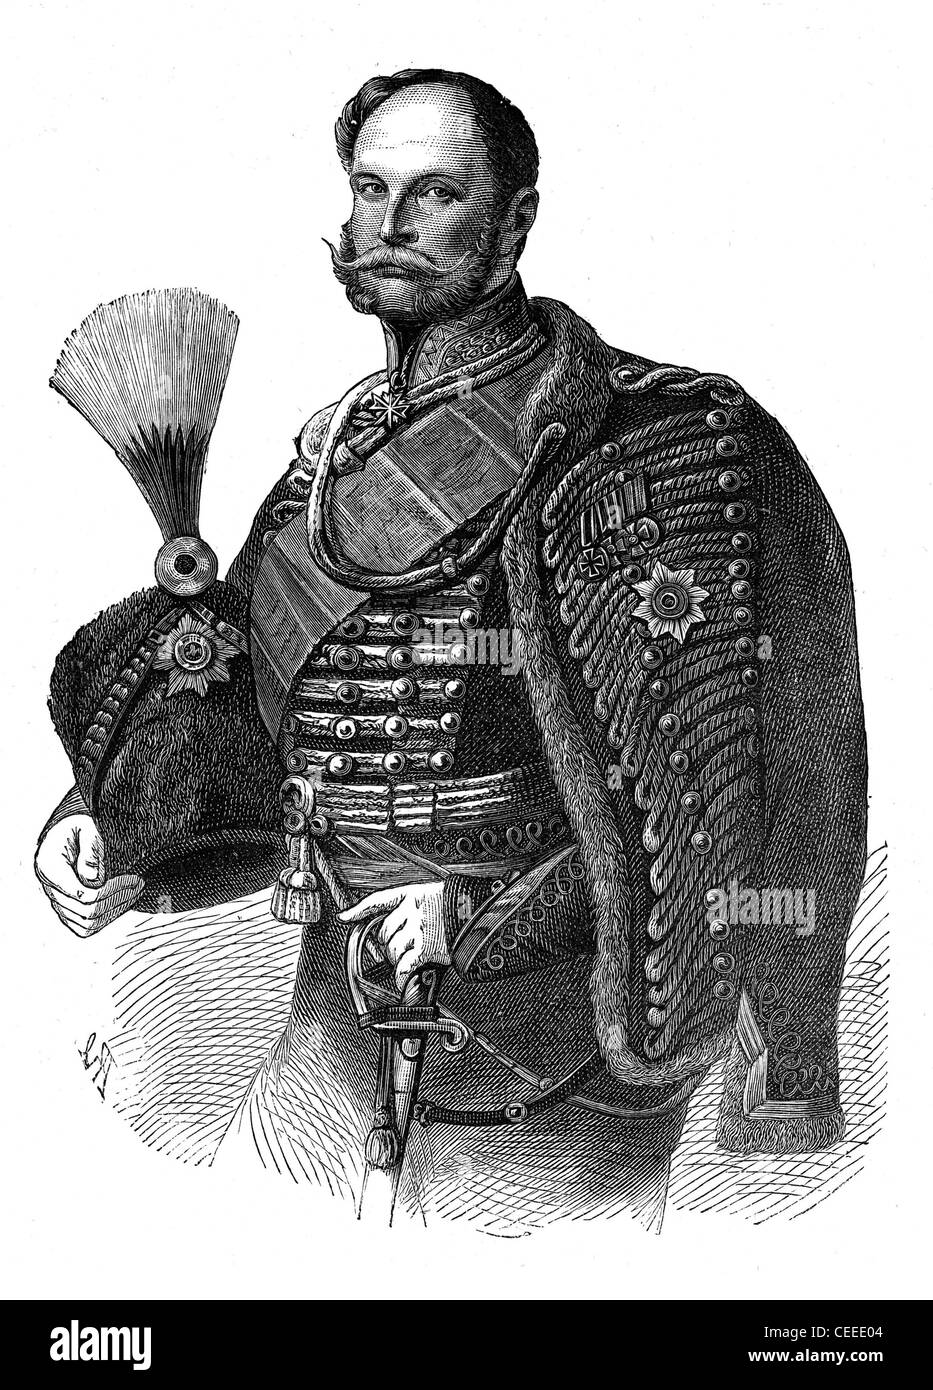 Wilhelm i. - König von Preußen von 1861. Erster Kaiser von Deutschland ab 1871 Stockfoto